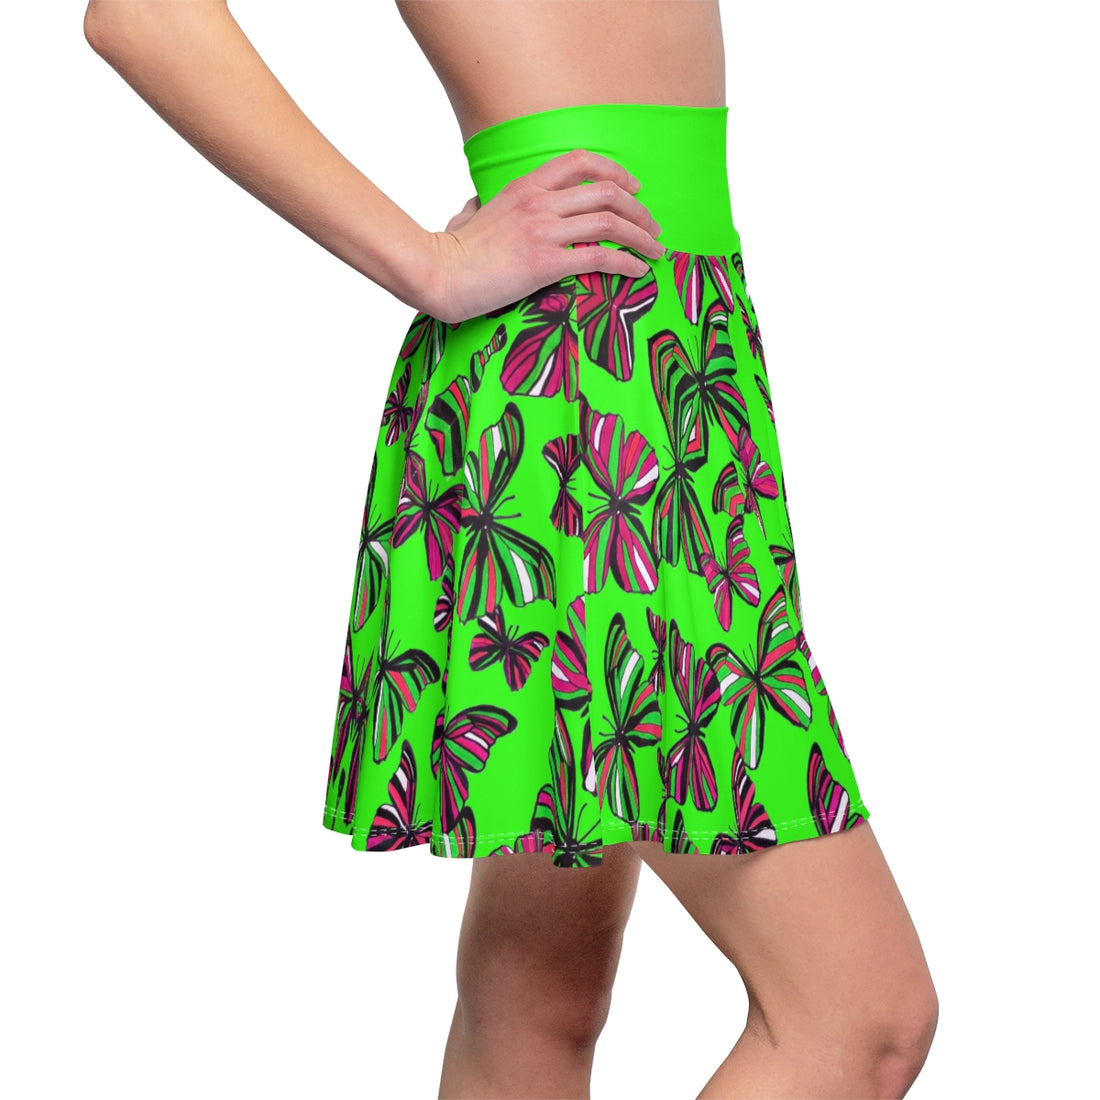 Neon Green Butterflies Skater Skirt